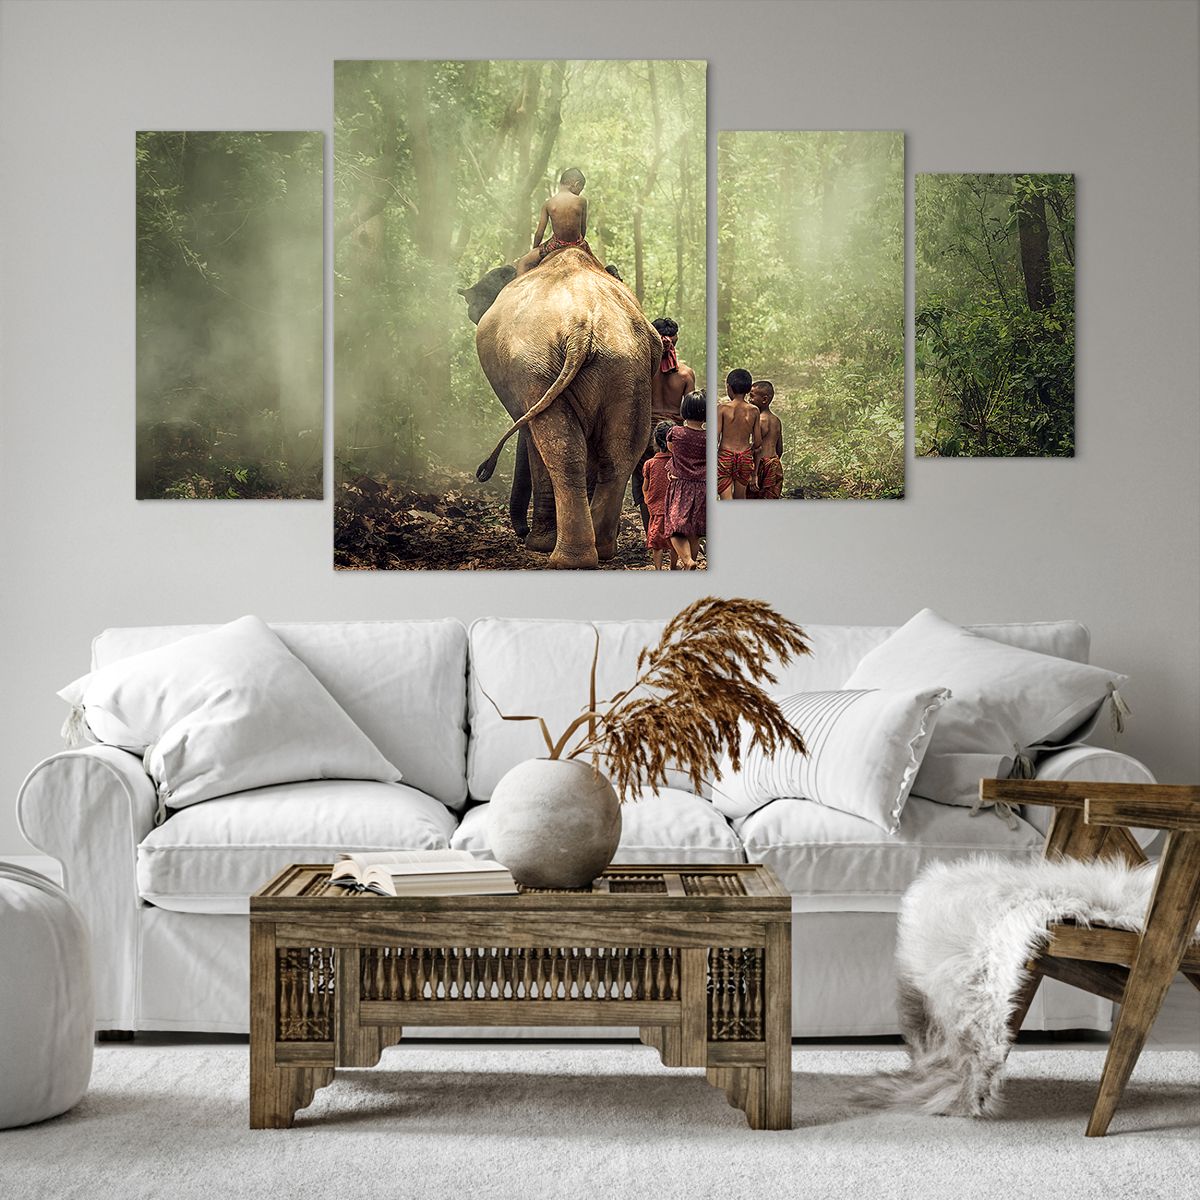 Impression sur toile Paysage, Impression sur toile Éléphant, Impression sur toile Jungle, Impression sur toile Asie, Impression sur toile Thaïlande